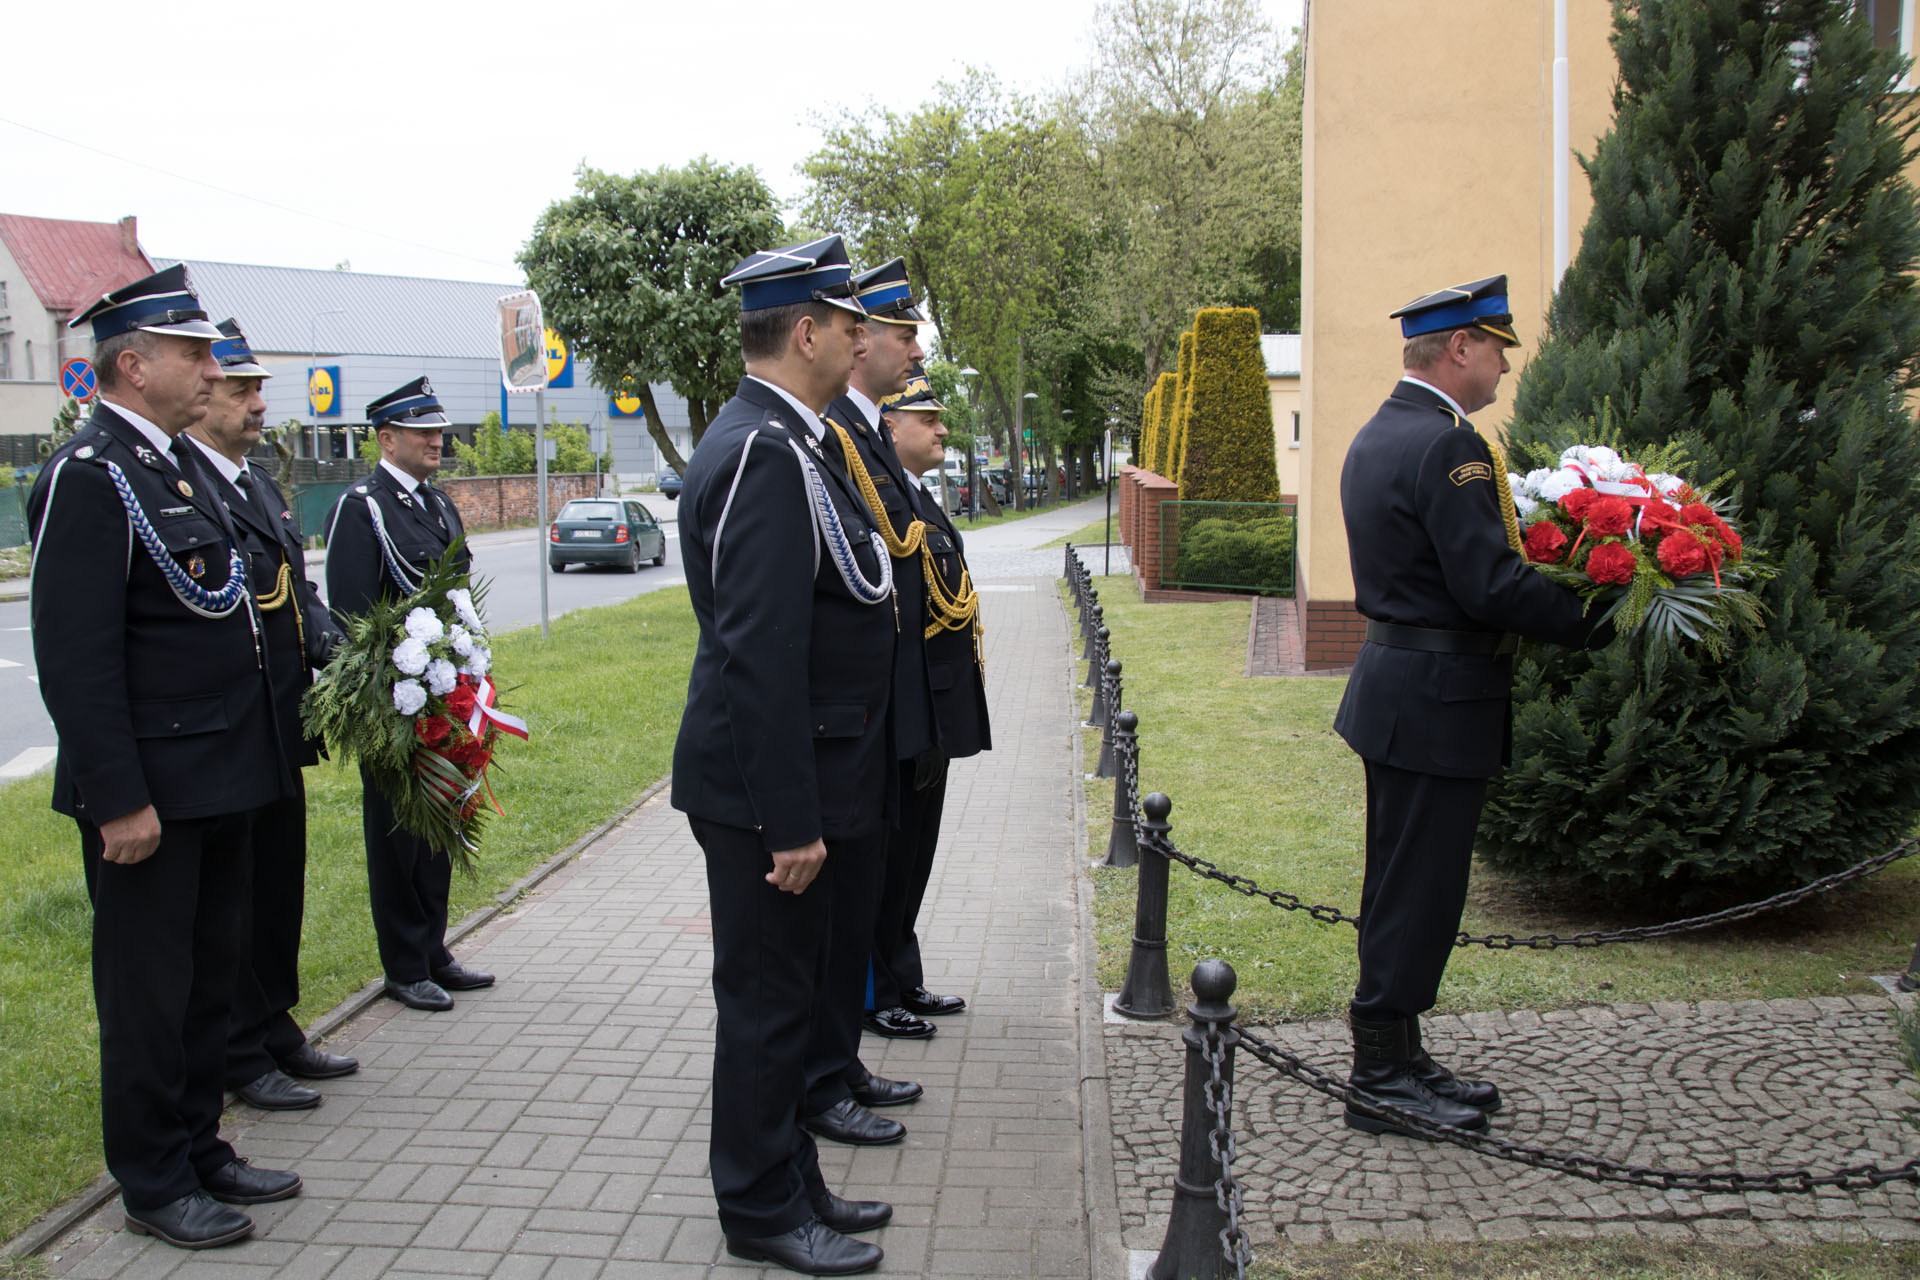 Powiatowe obchody Dnia Strażaka – złożenie kwiatów przed obeliskiem poświęconym pamięci zmarłych strażaków powiatu oleskiego